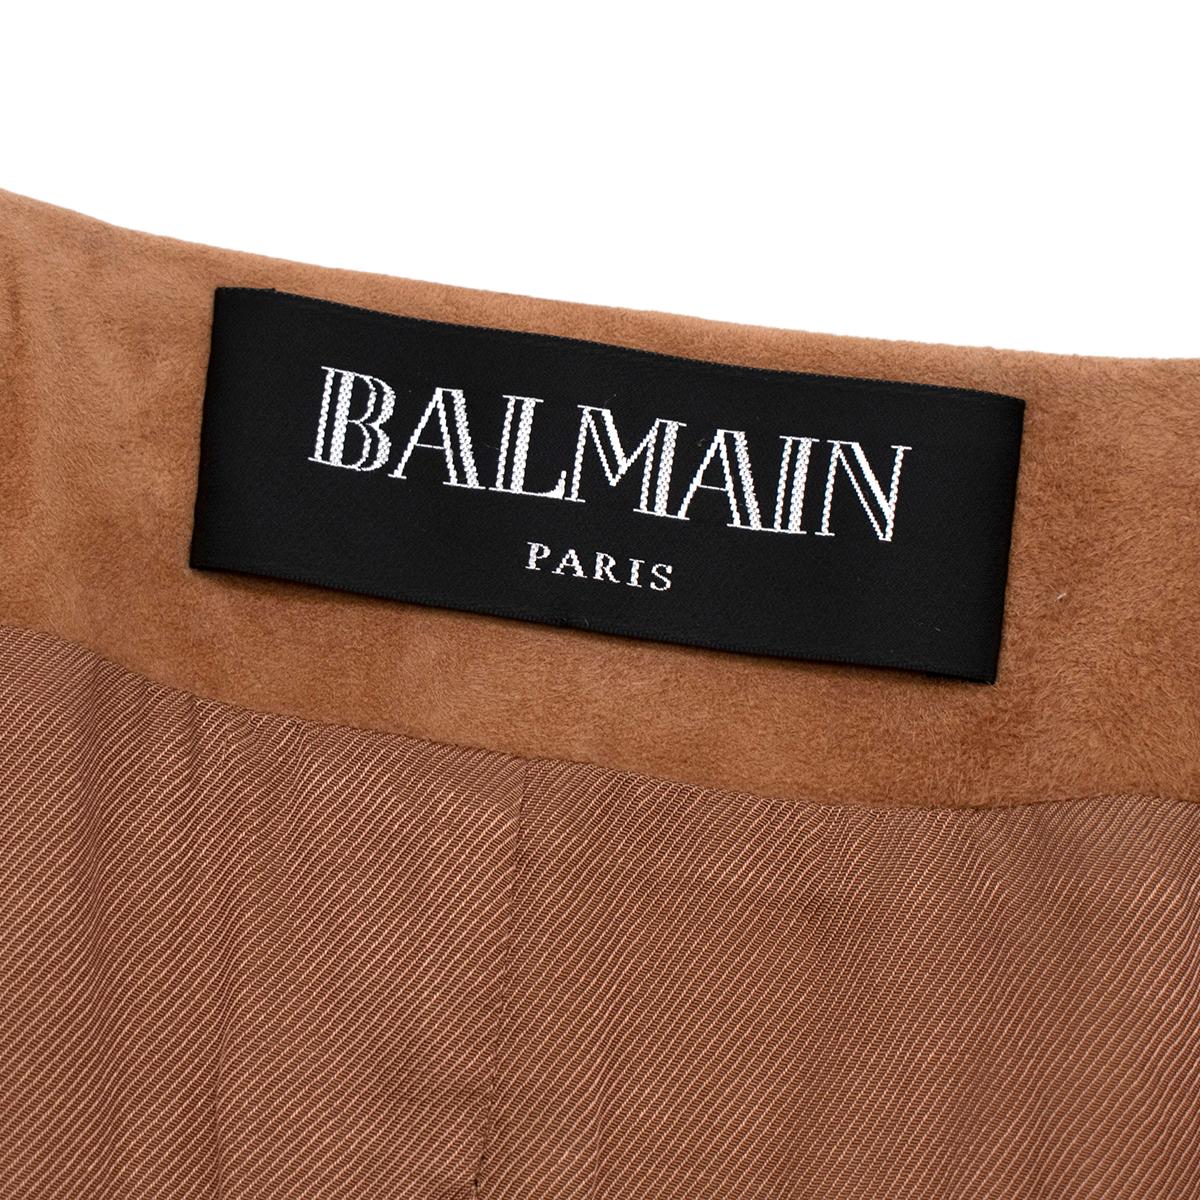 brown tie waist coat